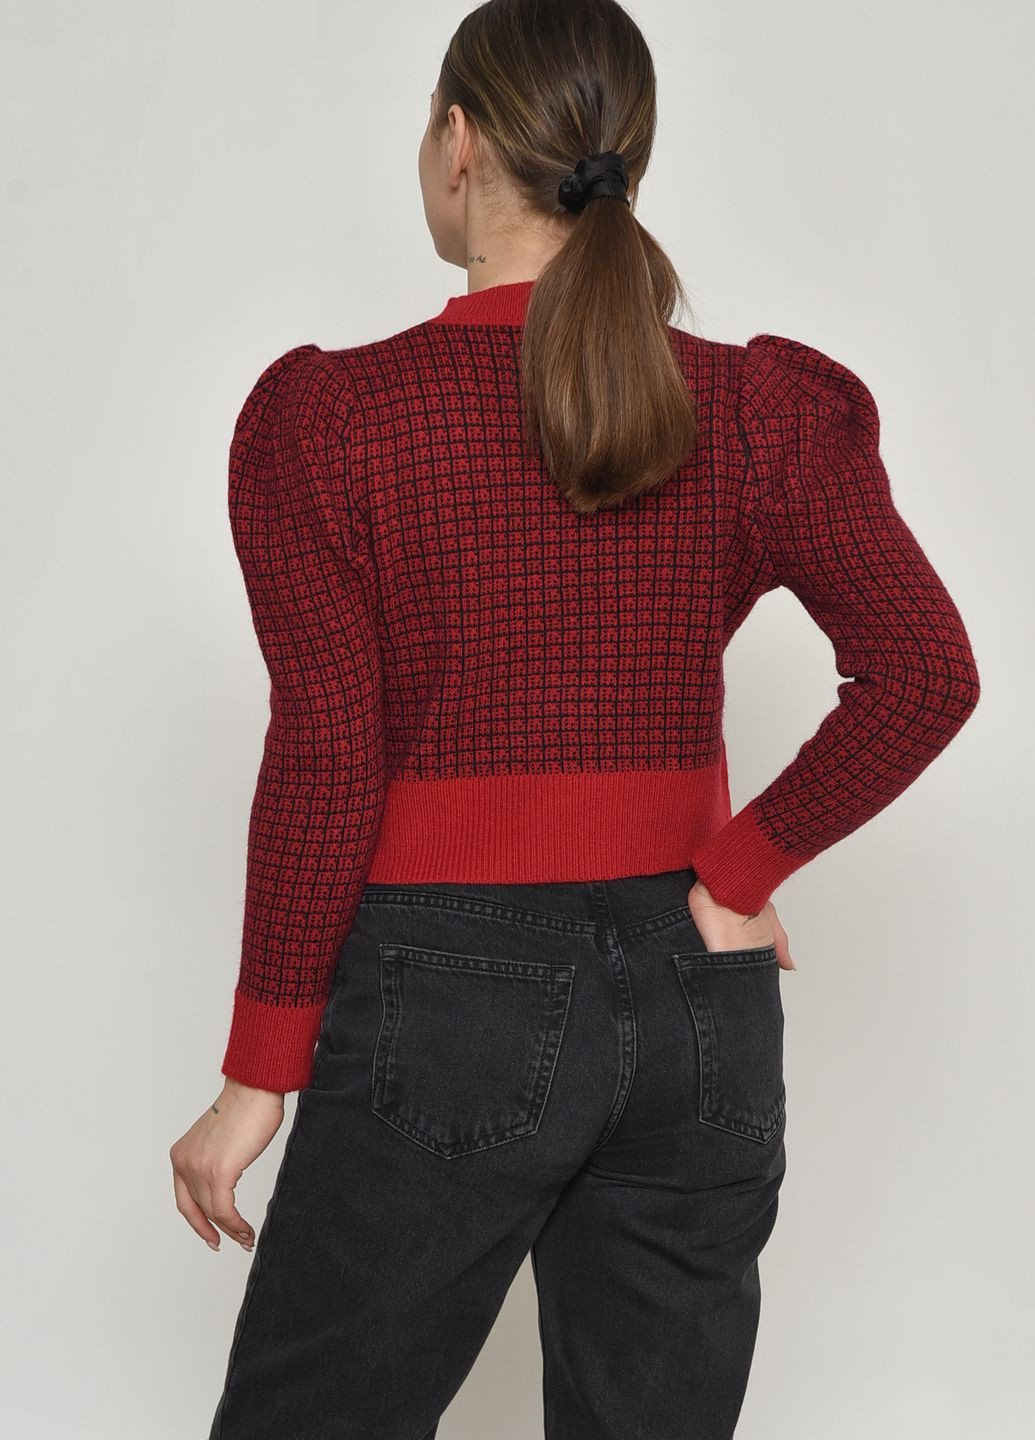 Красный демисезонный свитер женский красного цвета размер 42 джемпер Let's Shop